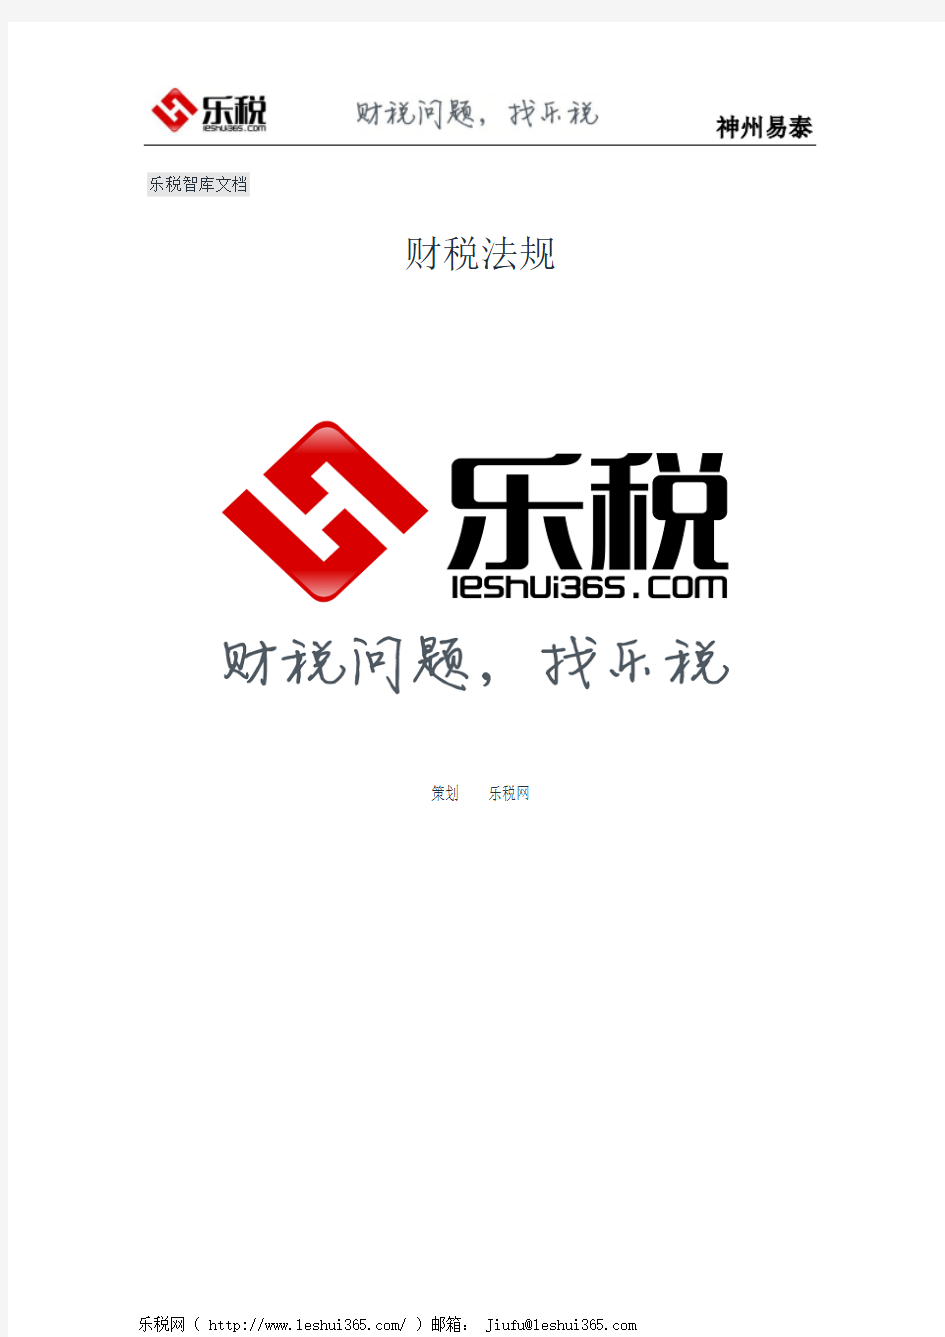 安徽省地方税务局关于调整芜湖县城镇土地使用税单位税额的批复